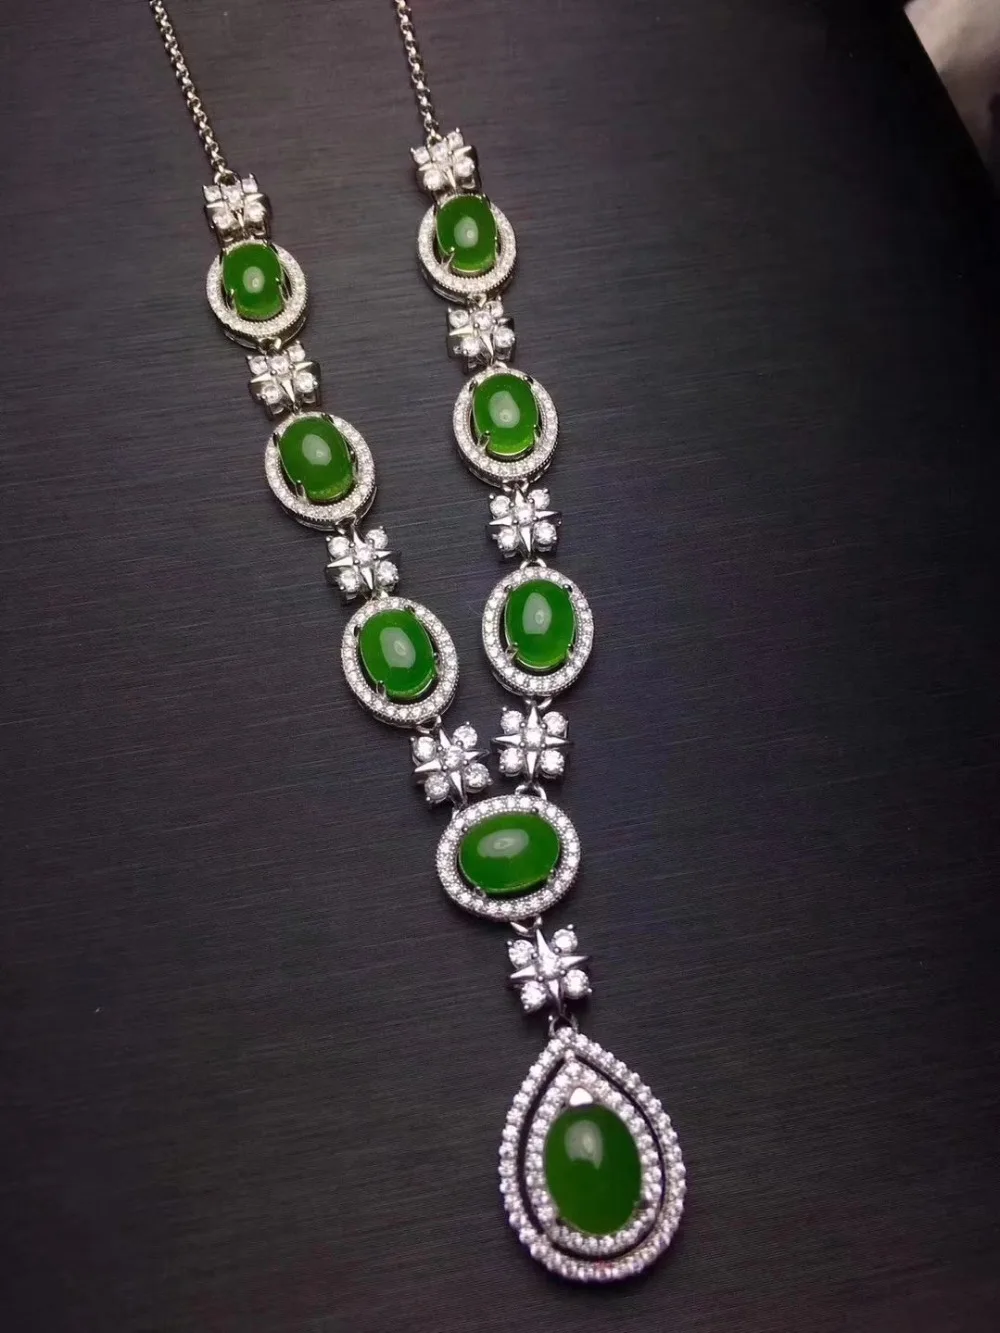 Роскошное ожерелье в виде капли воды клевера из натуральной яшмы зеленого цвета